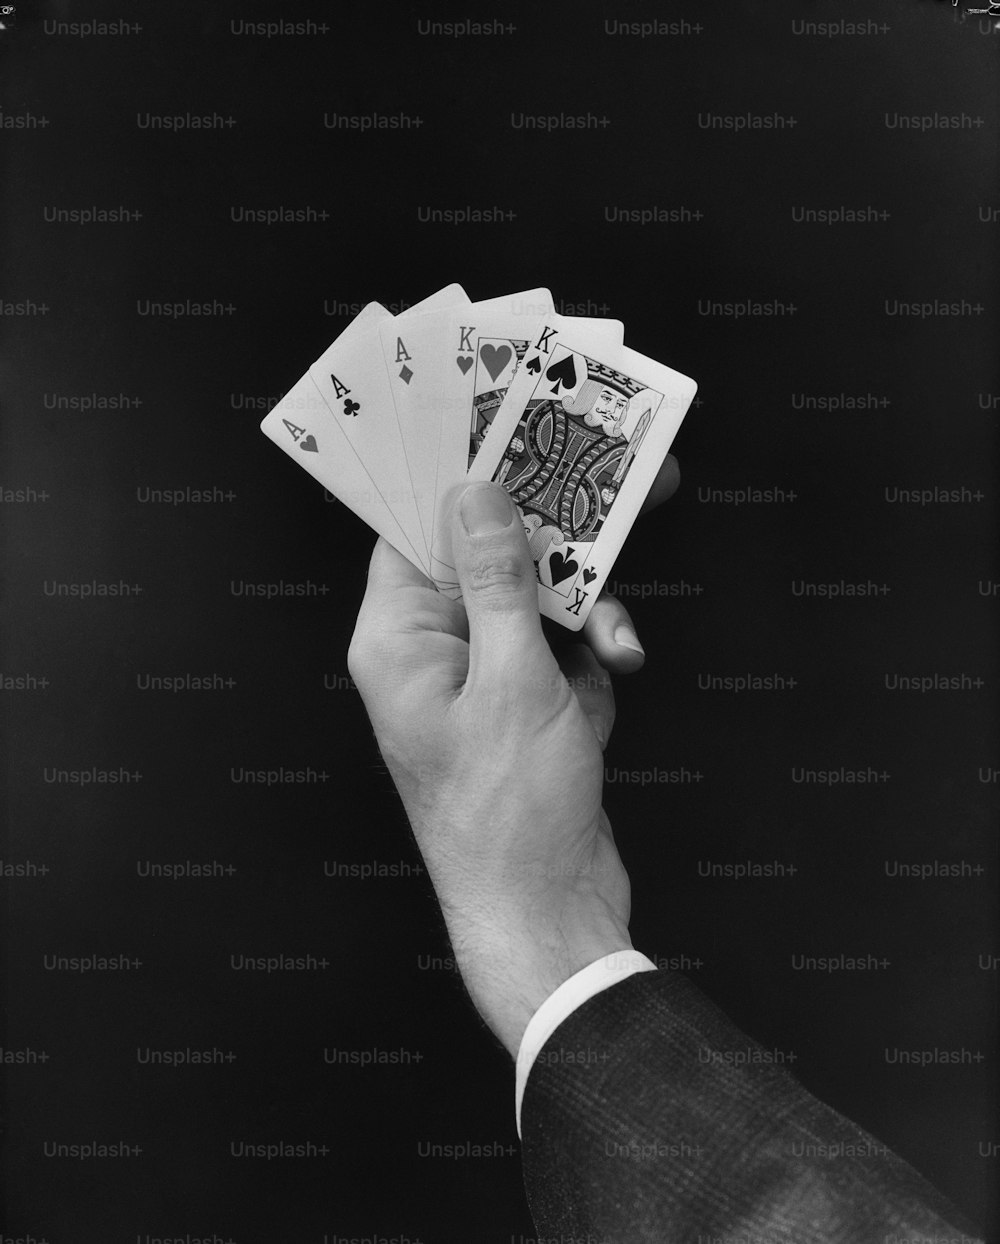 STATI UNITI - CIRCA 1950: Mano dell'uomo che tiene la mano della carta da poker 'full house'.